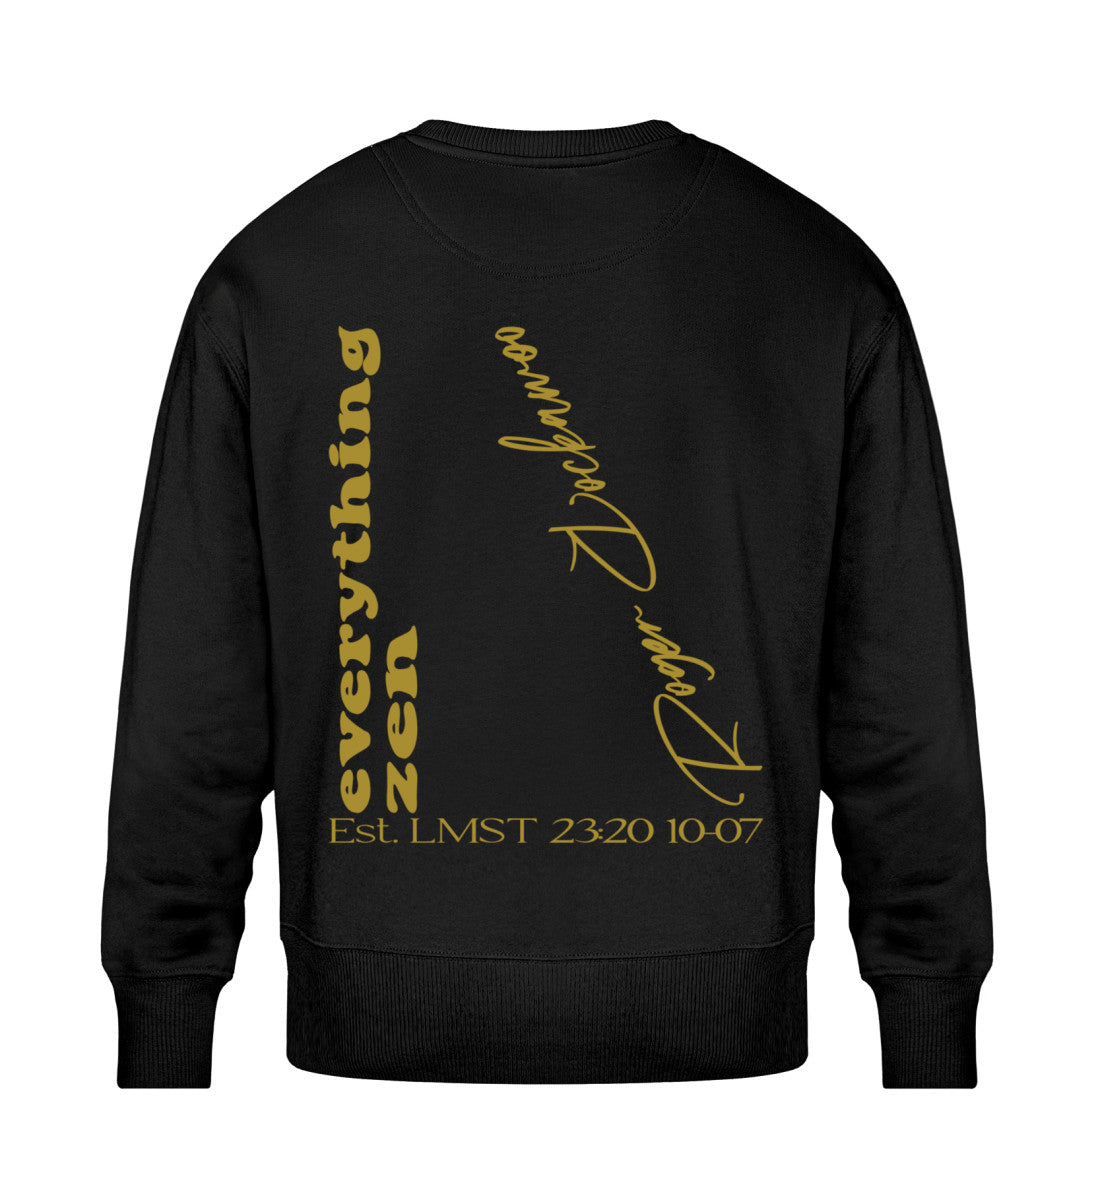 Schwarzes Sweatshirt Unisex für Frauen und Männer bedruckt mit dem Design der Roger Rockawoo Kollektion Yoga Everything Zen